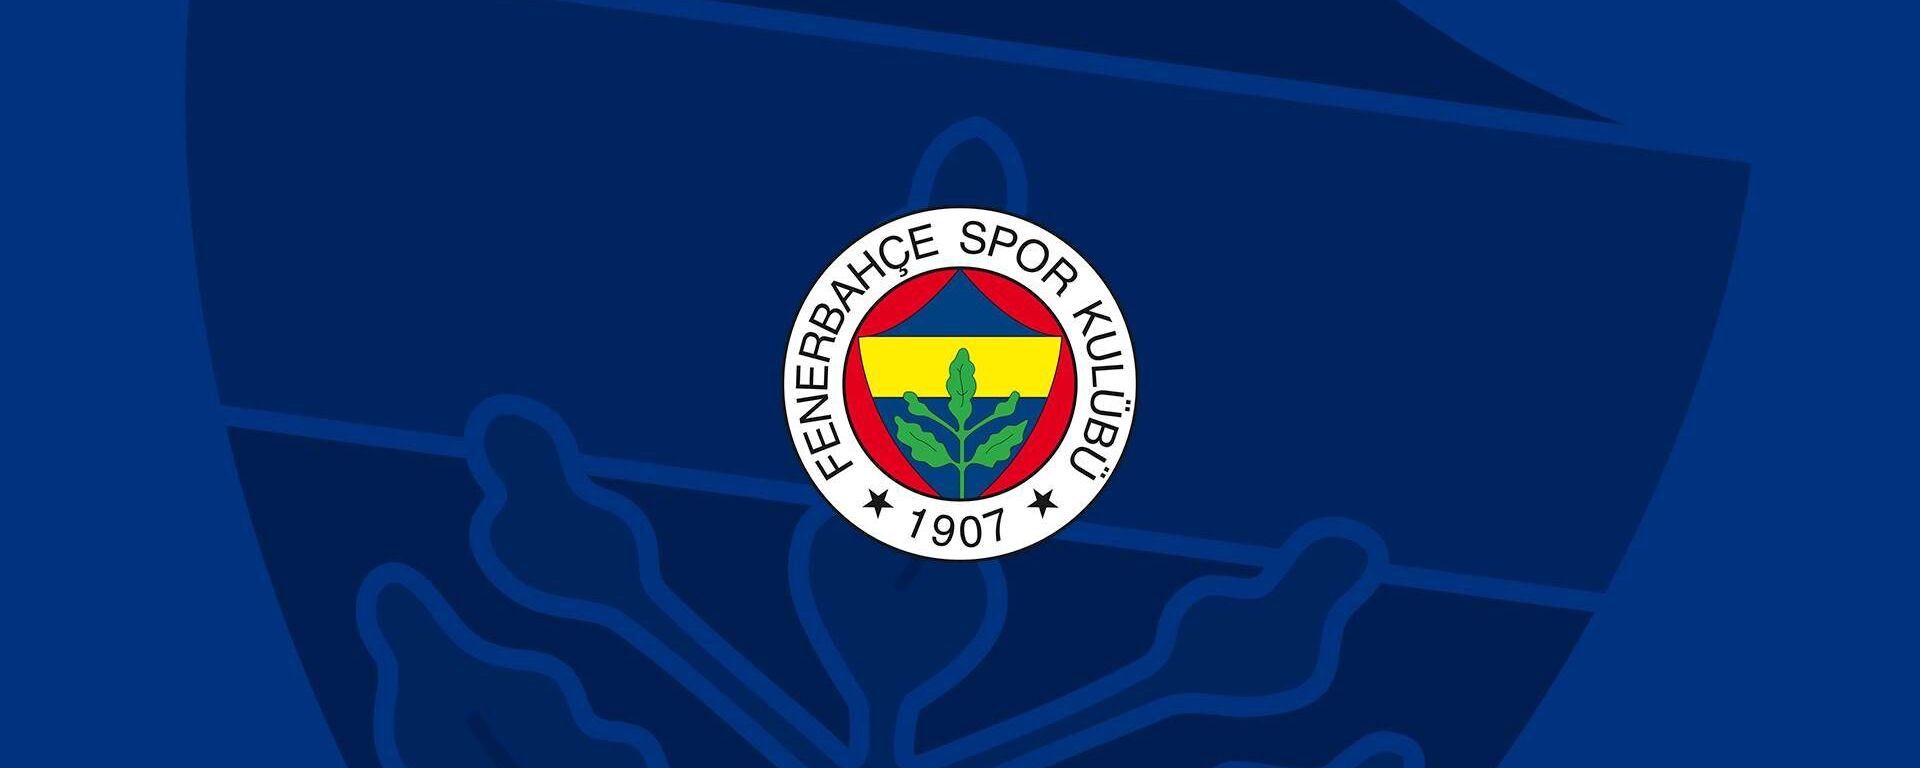 Fenerbahçe Spor Kulübü logosu - Sputnik Türkiye, 1920, 20.04.2021